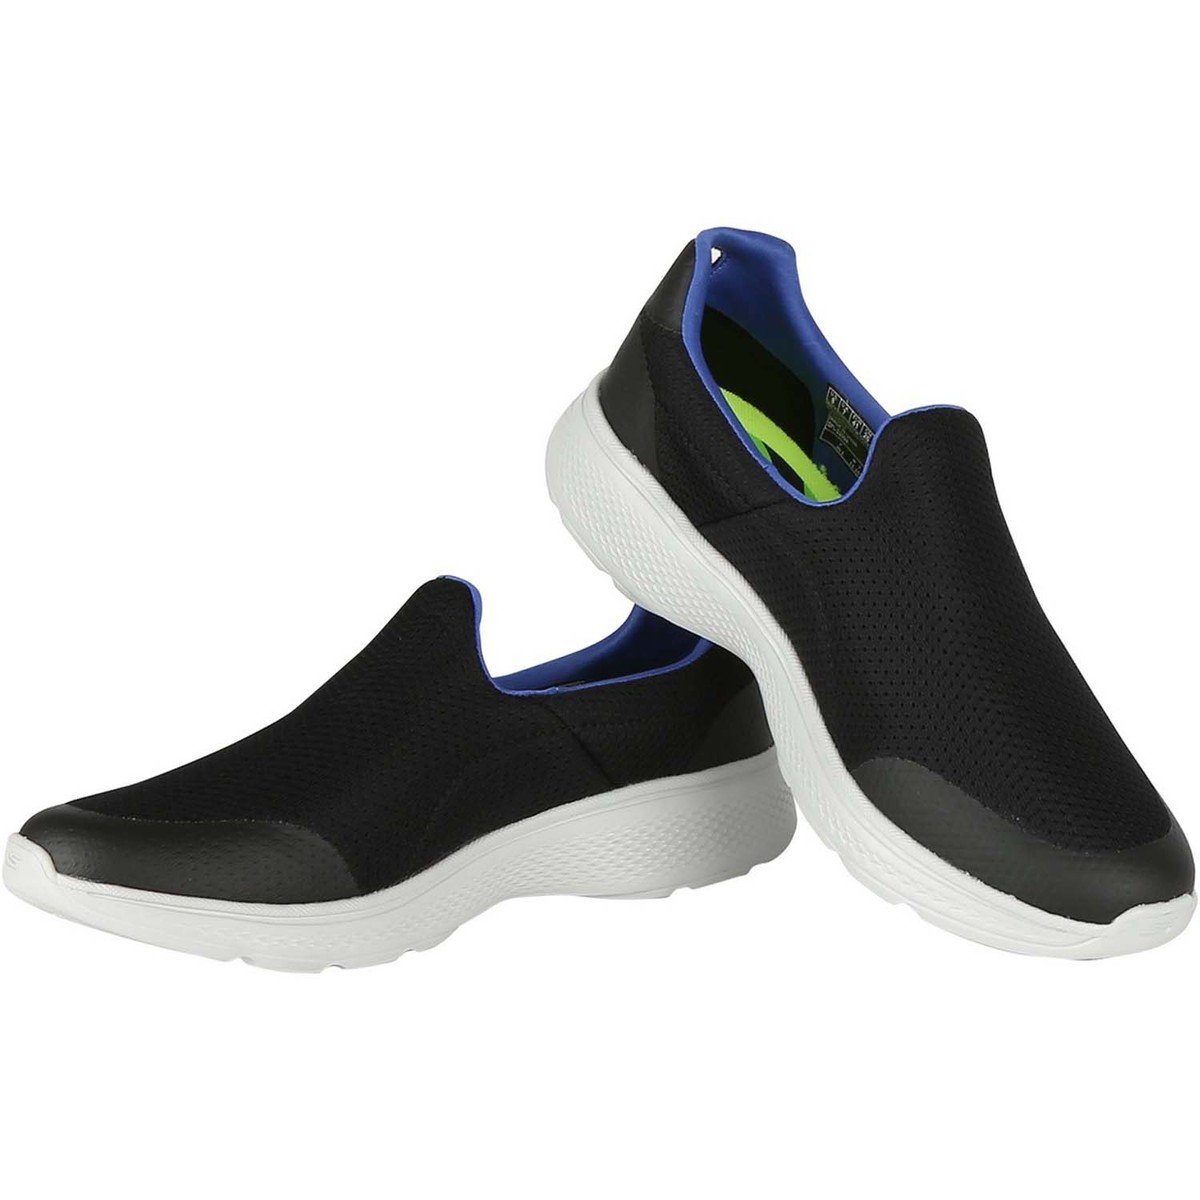 Skechers Men's Sports Shoes 54152BKBL Black Blue Online at Best Price ...